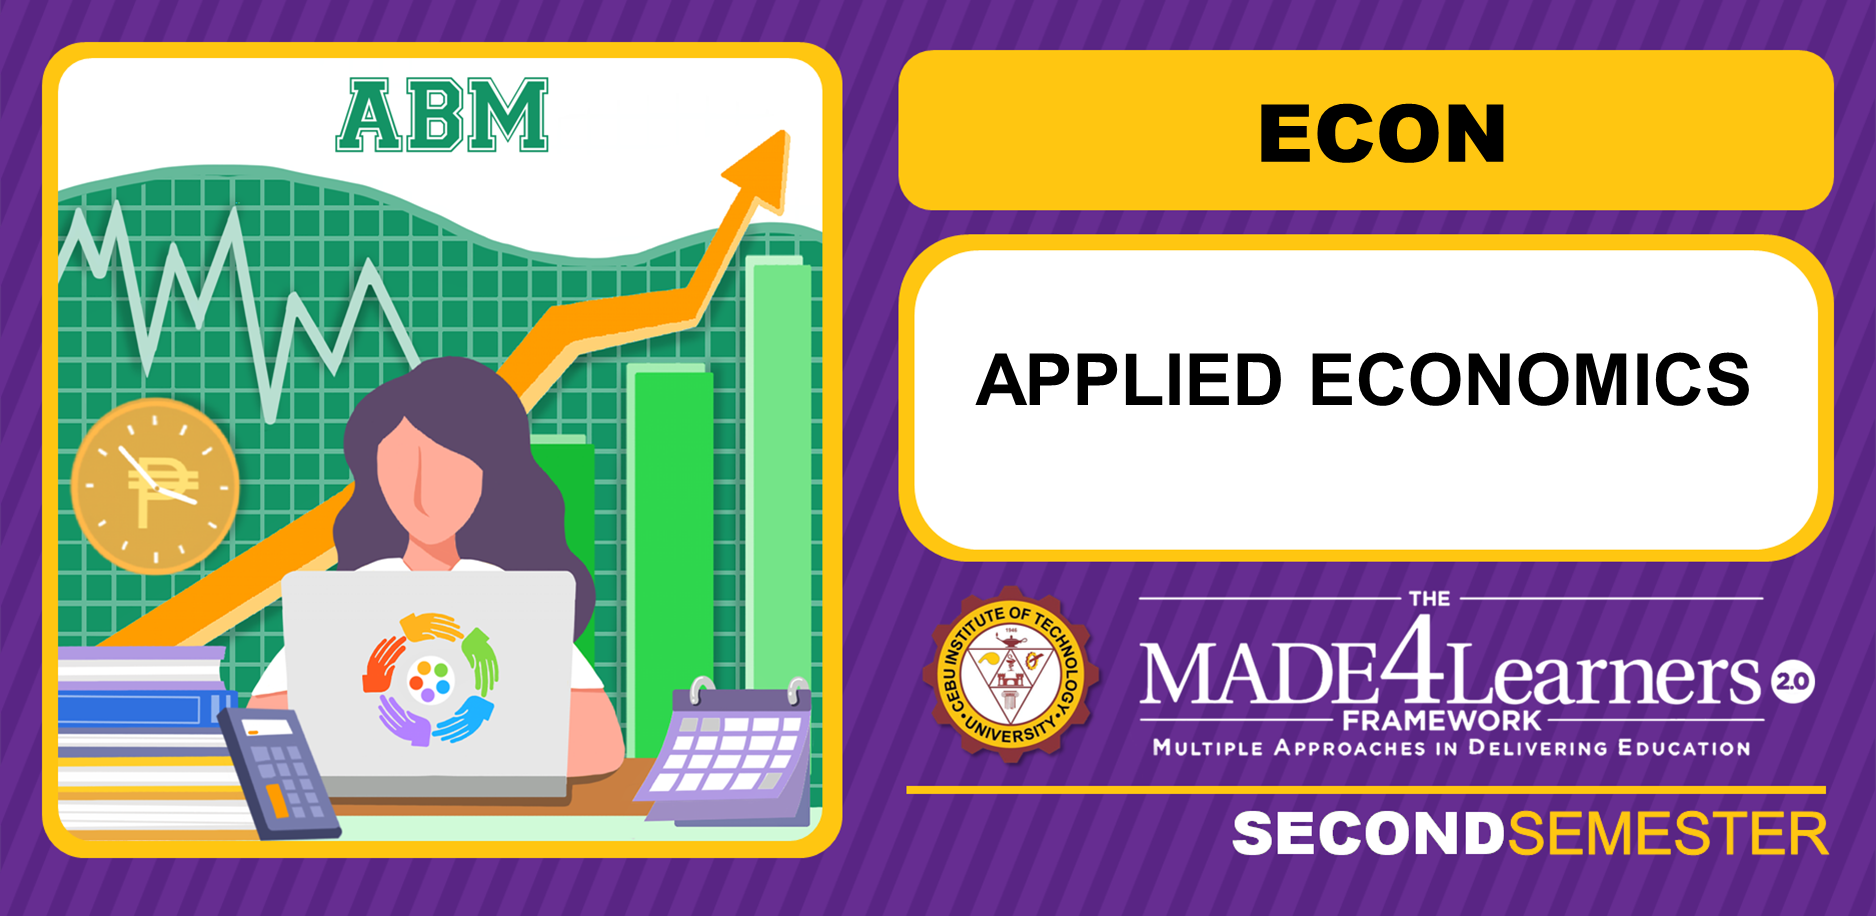 ECON: Applied Economics